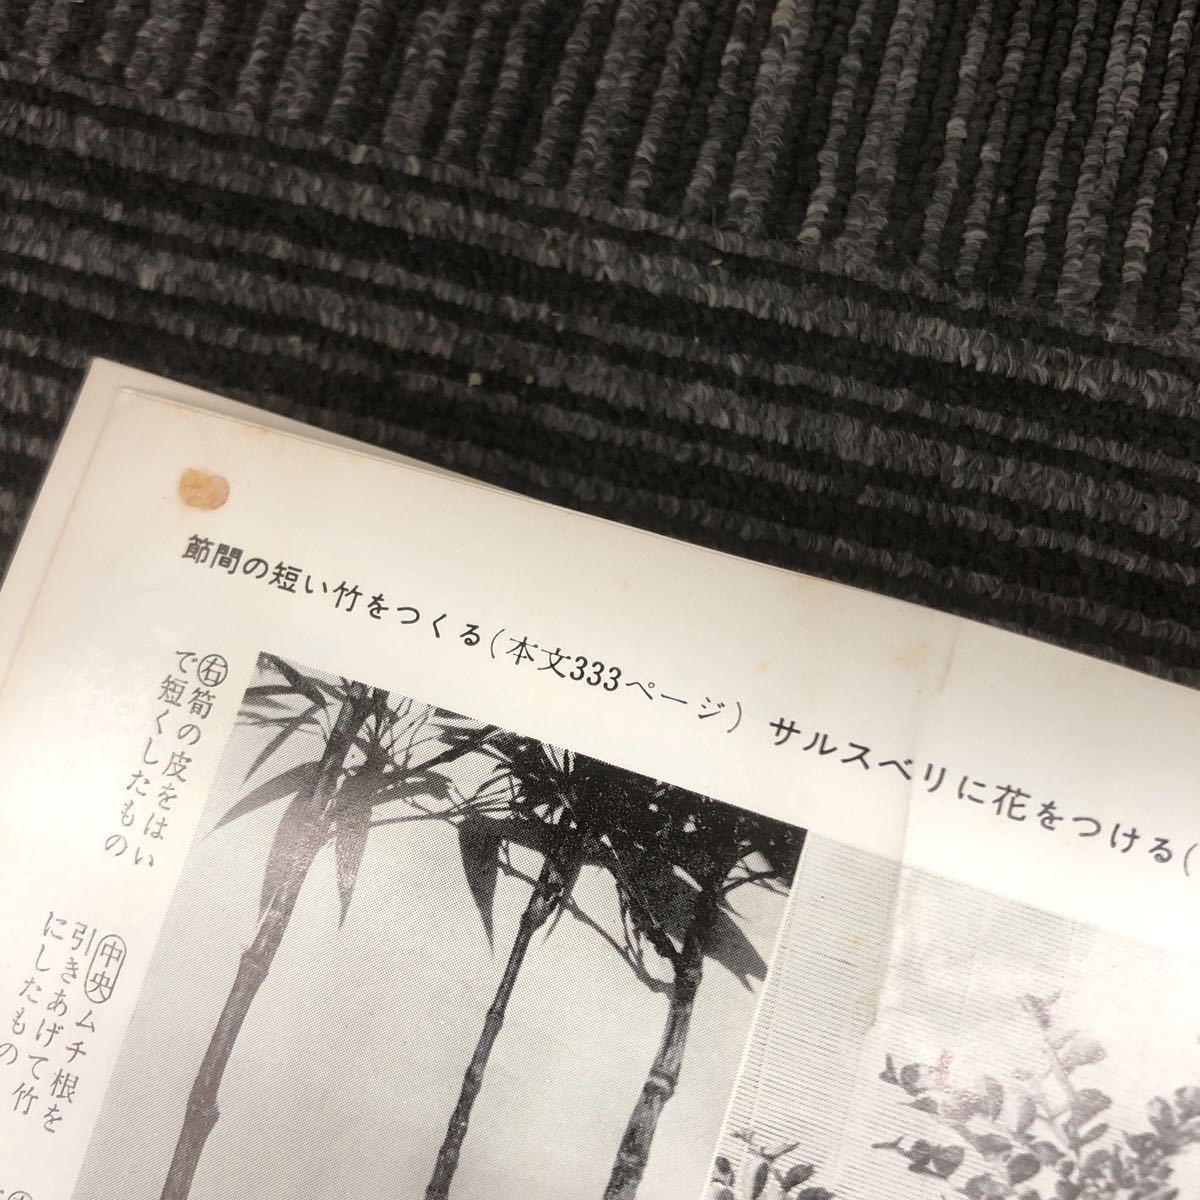 N[H5] бонсай. все . ветка ./ работа сельское хозяйство книги Showa 48 год выпуск 1973 год бонсай садоводство растение в горшке retro садовое дерево сад 